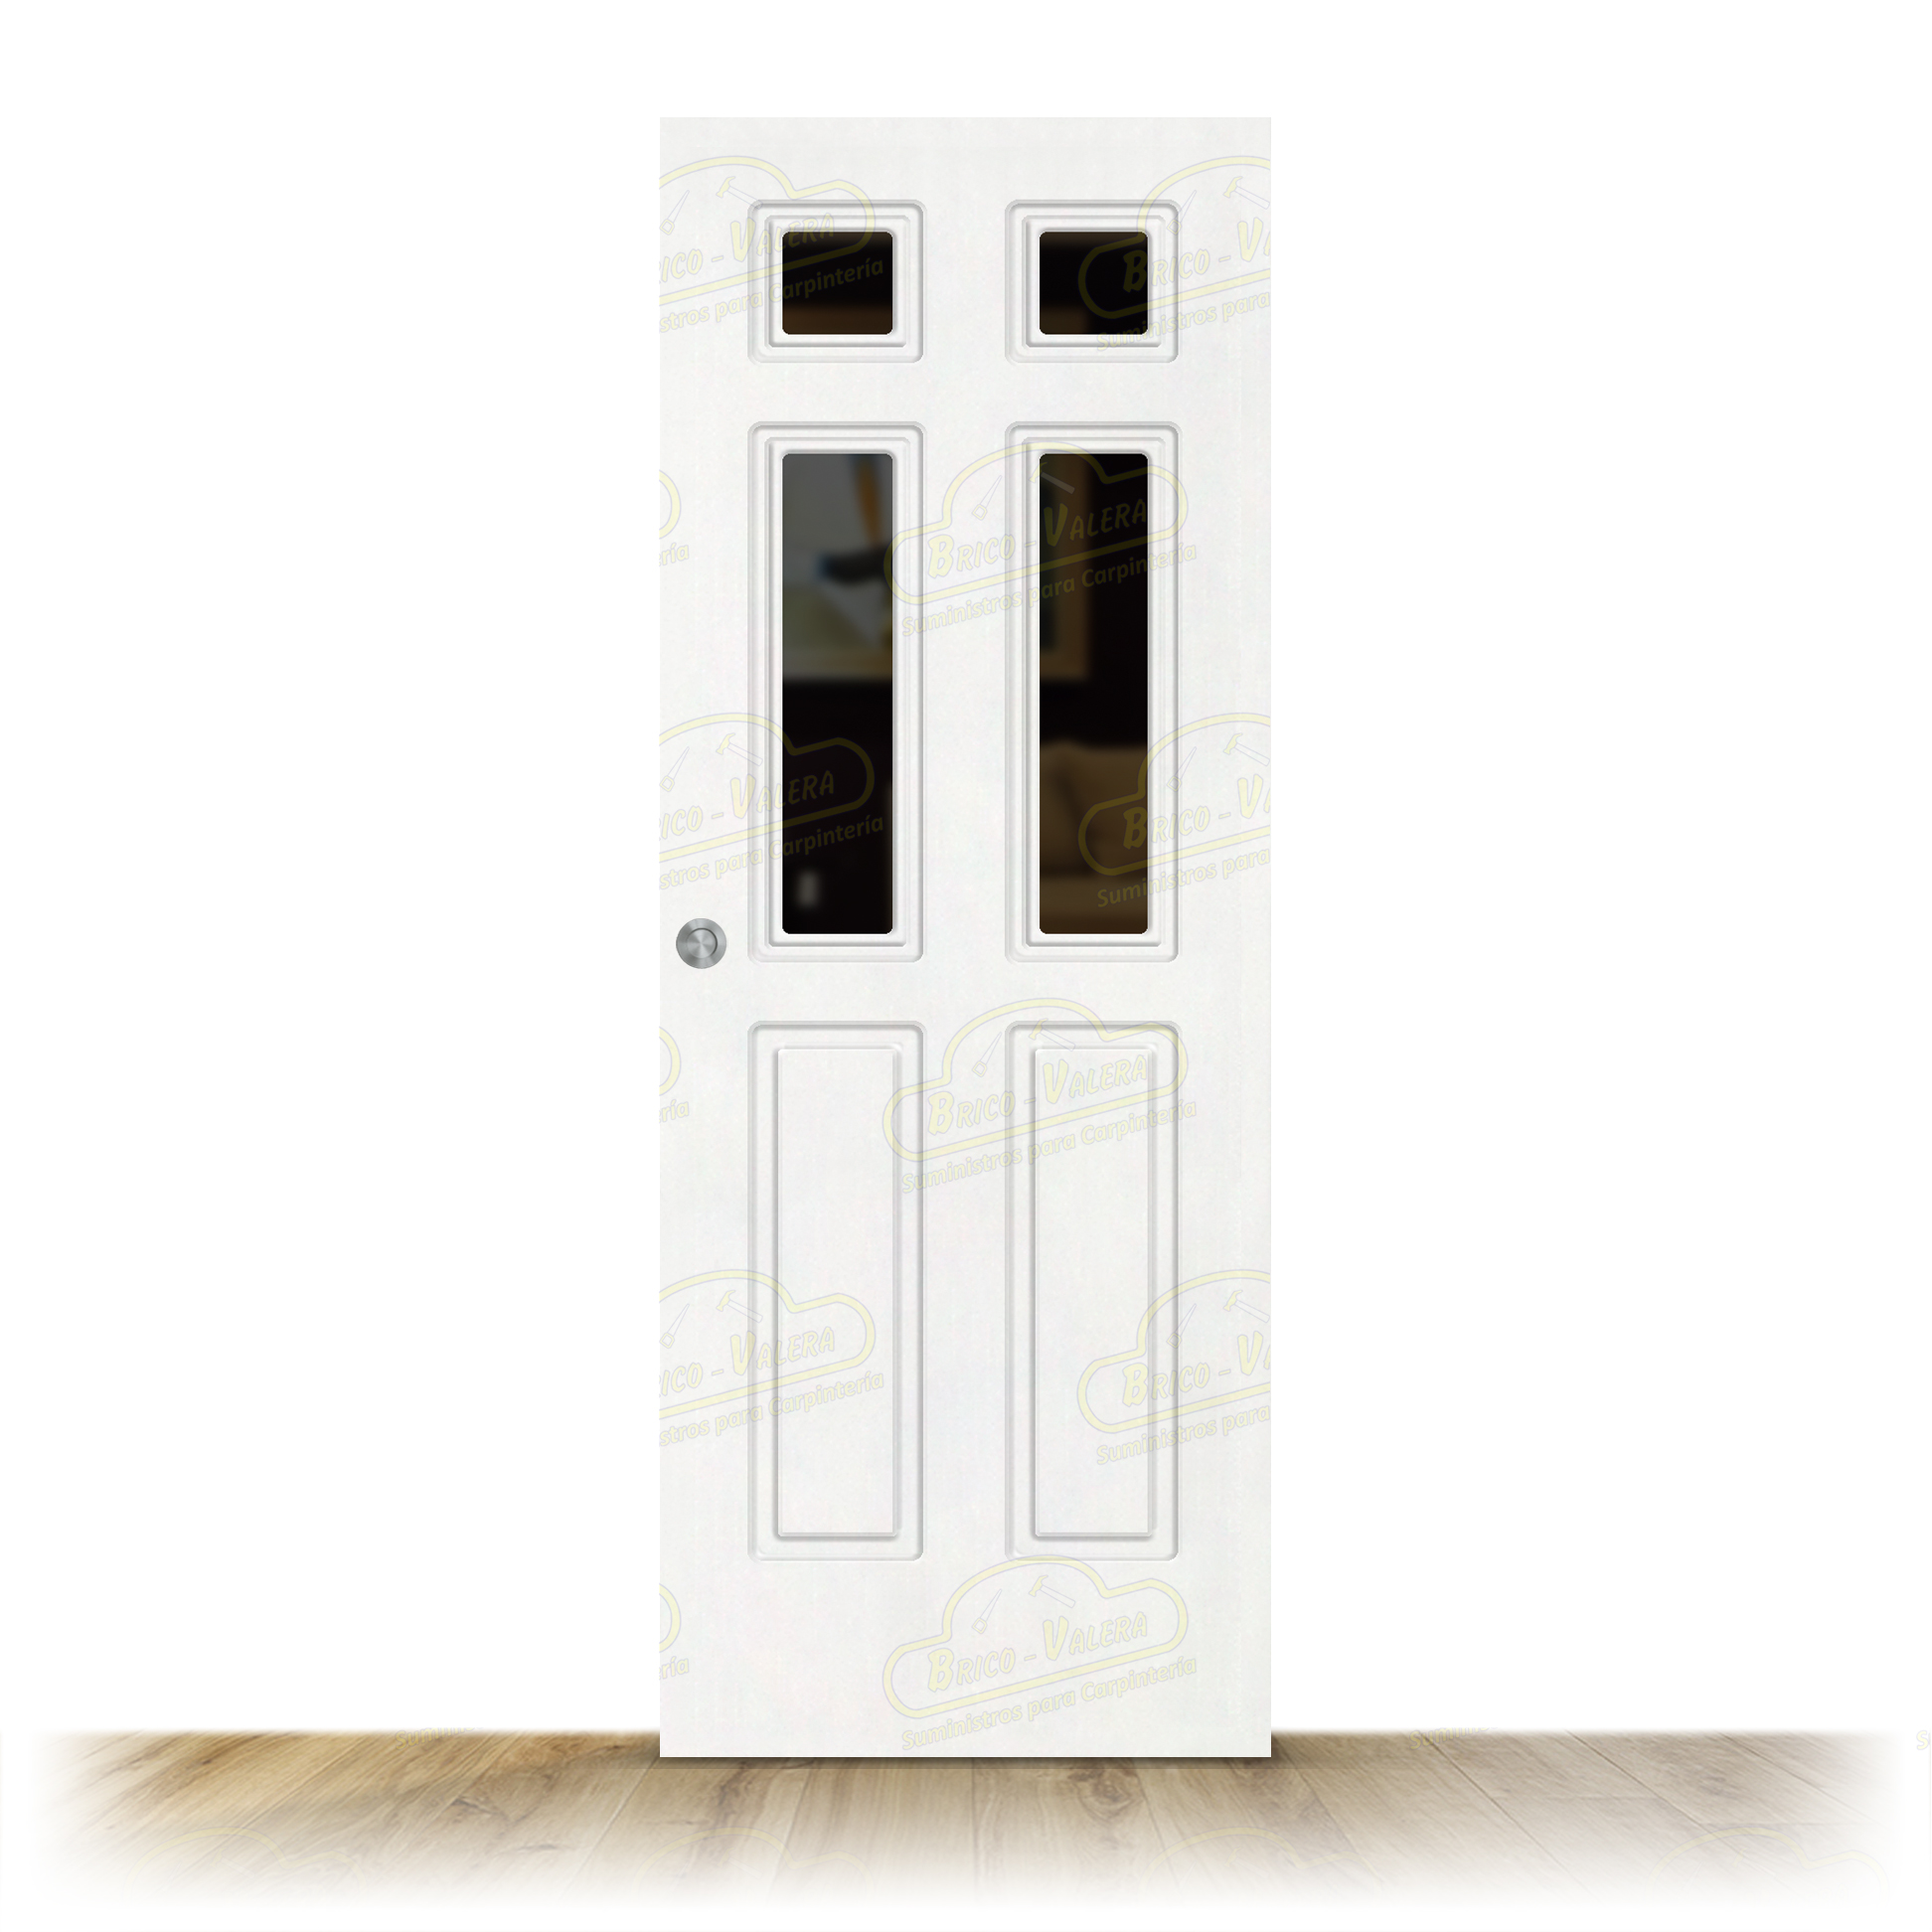 Puerta P16-V4 Lacada Blanca Corredera de Interior (Maciza)